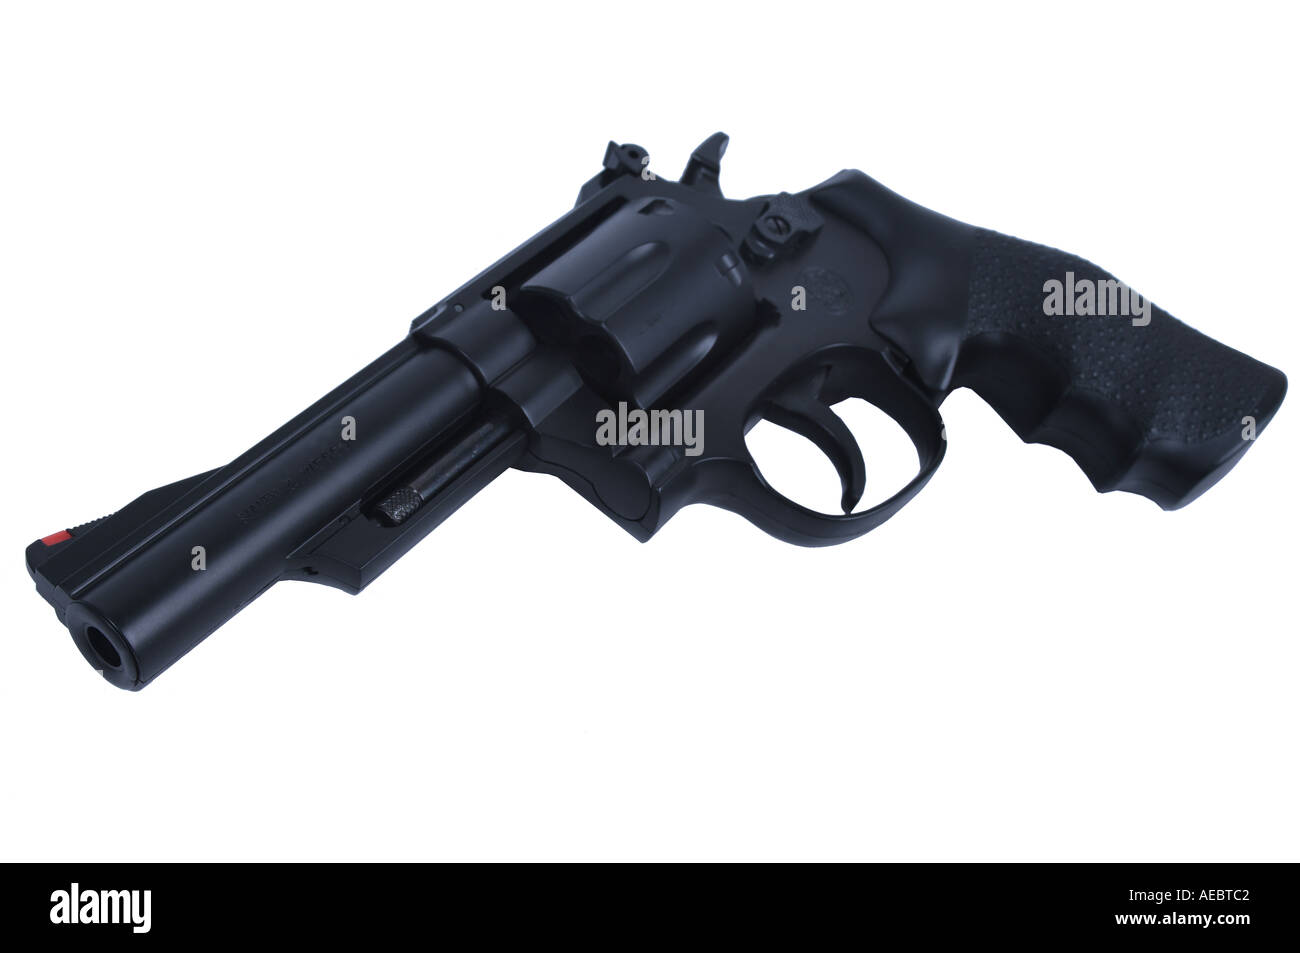 Découper d'un pistolet revolver Magnum 357 Banque D'Images